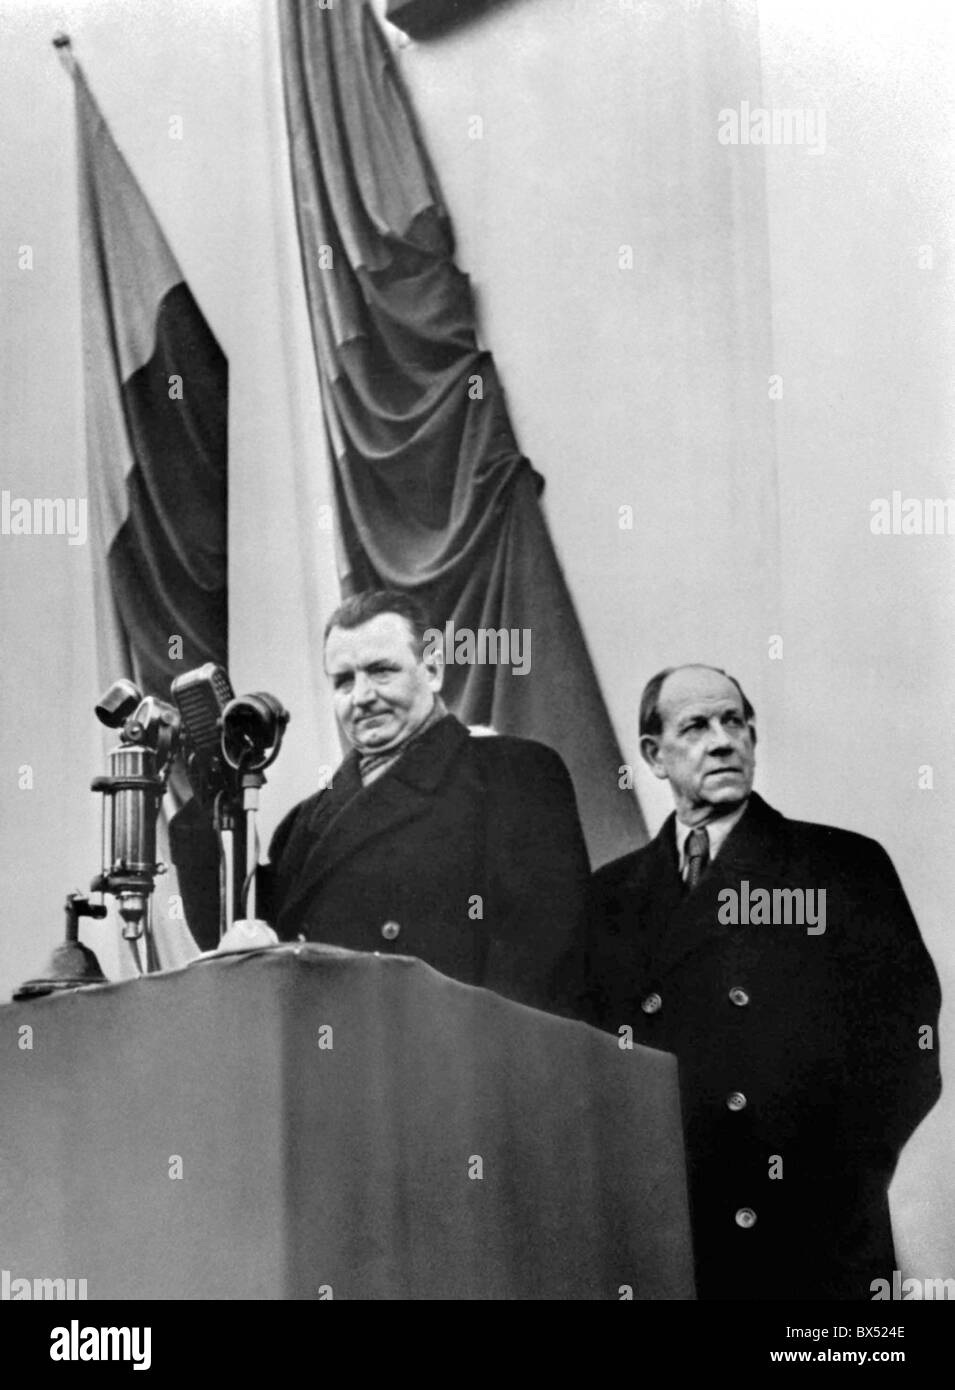 Prague, February 1948, propaganda, brainwashing, manifestation, intimidation Stock Photo